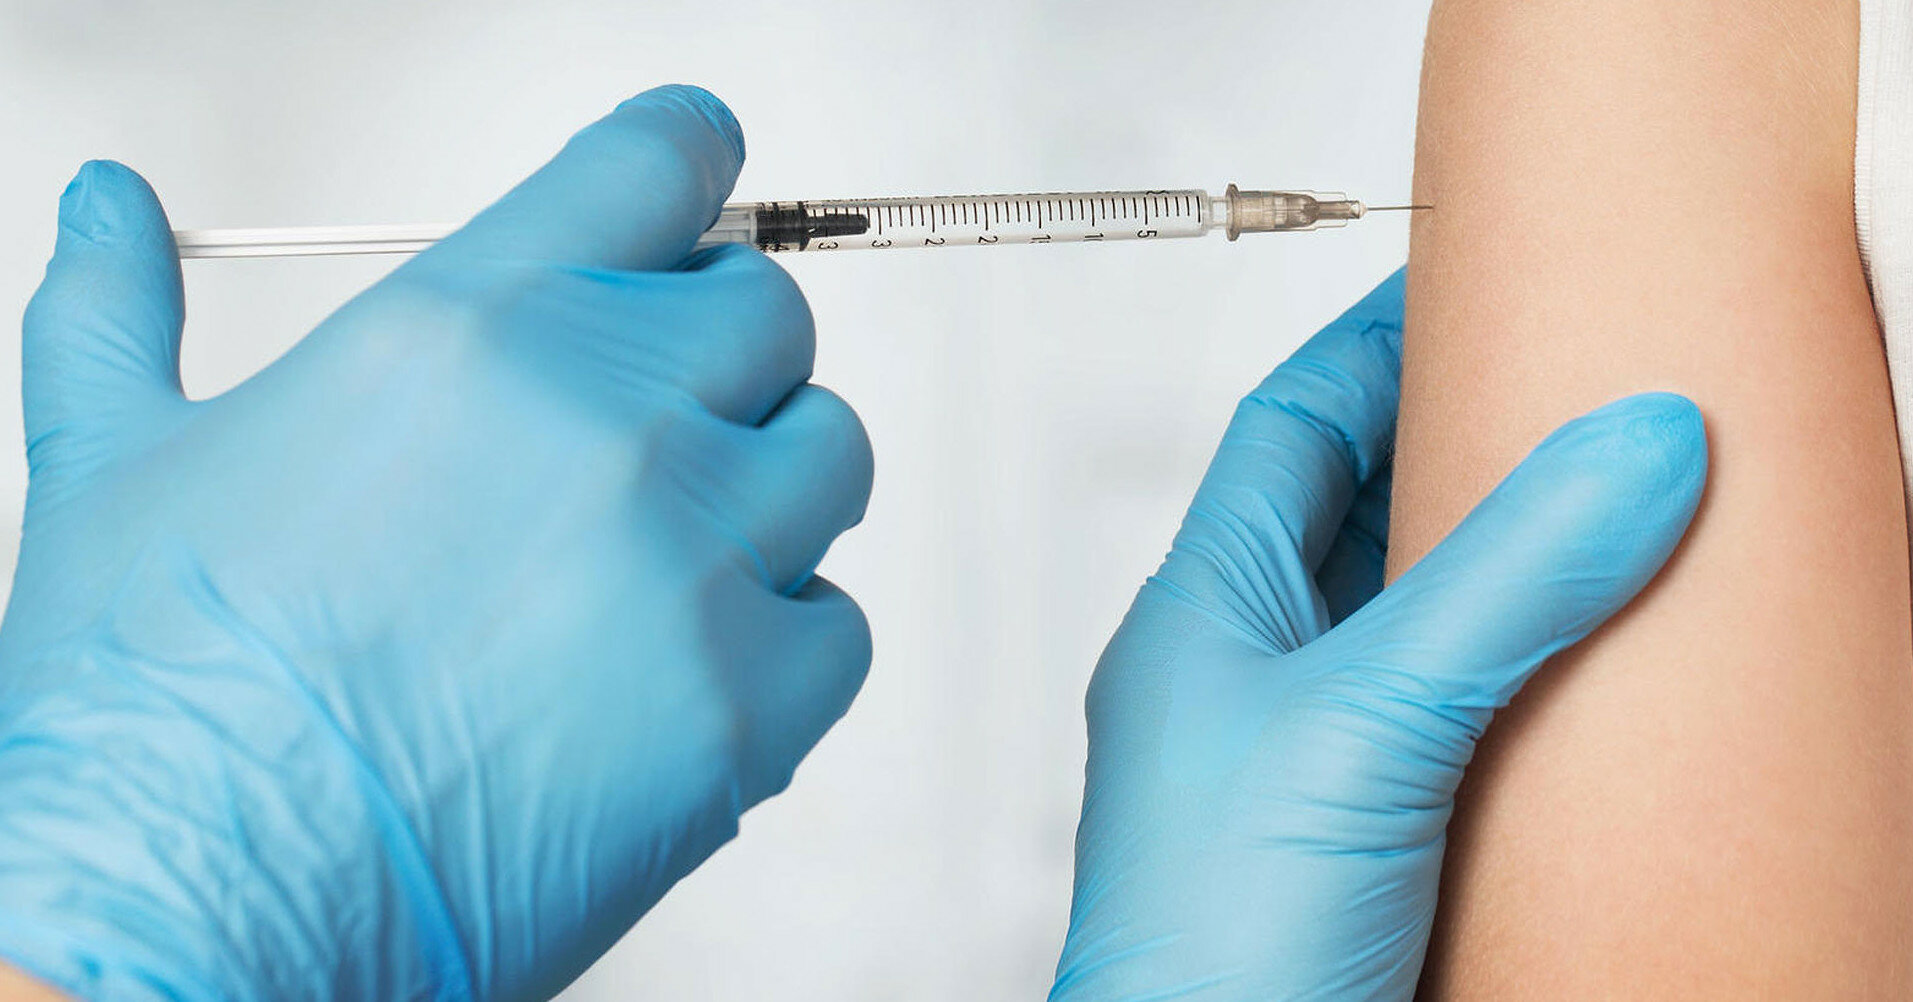 Прививка против гриппа может защитить от COVID-19 - исследование